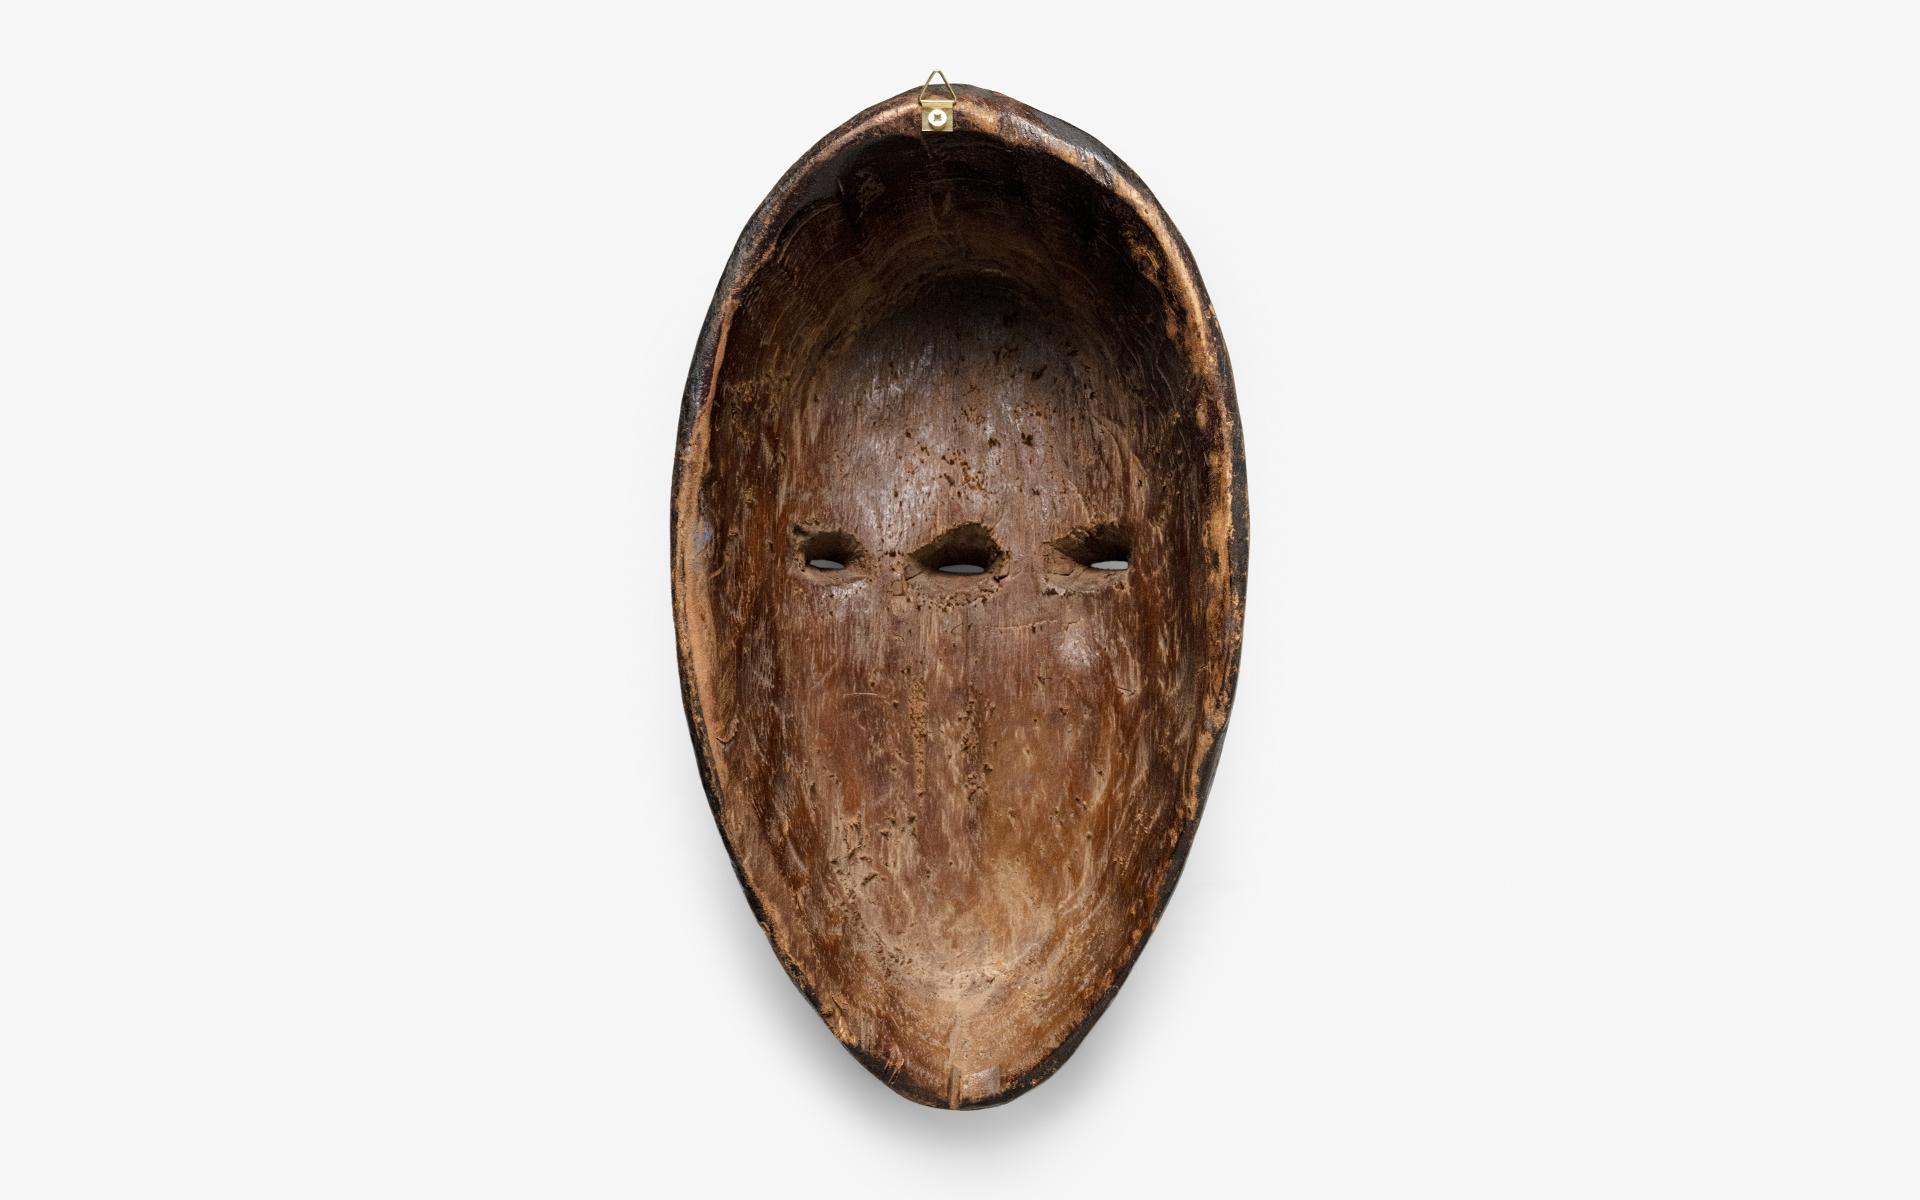  Un masque unique, fabriqué à la main par des artisans de la région de Punu au Gabon. Ce masque a été fabriqué à l'aide de techniques de sculpture sur bois et orné de peinture à la détrempe polychrome, ce qui lui confère un aspect distinct et